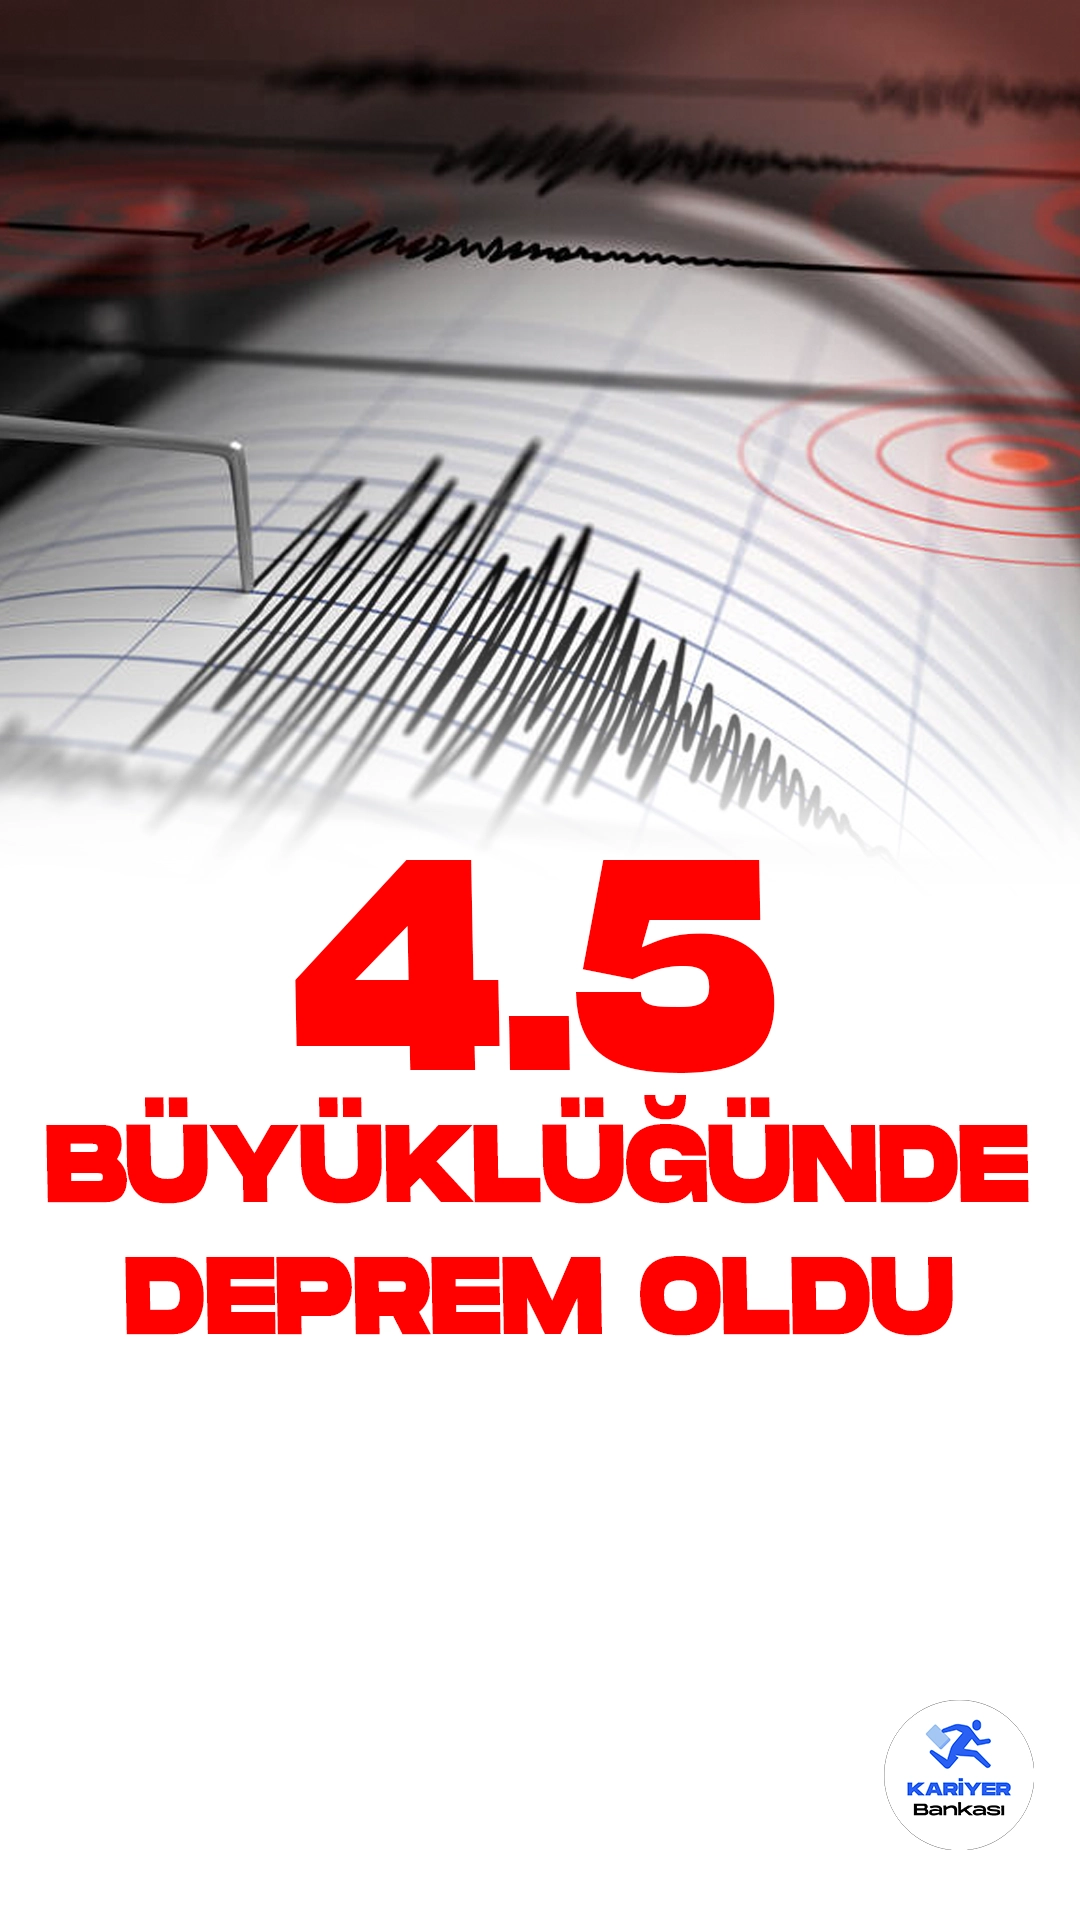 Malatya'da 4.5 Büyüklüğünde Deprem Oldu. İçişleri Bakanlığı Afet ve Acil Durum Yönetimi Başkanlığı (AFAD) Deprem Dairesi sayfası üzerinden Malatya'nın Pötürge ilçesinde 4.5 büyüklüğünde deprem meydana geldiği aktarıldı.